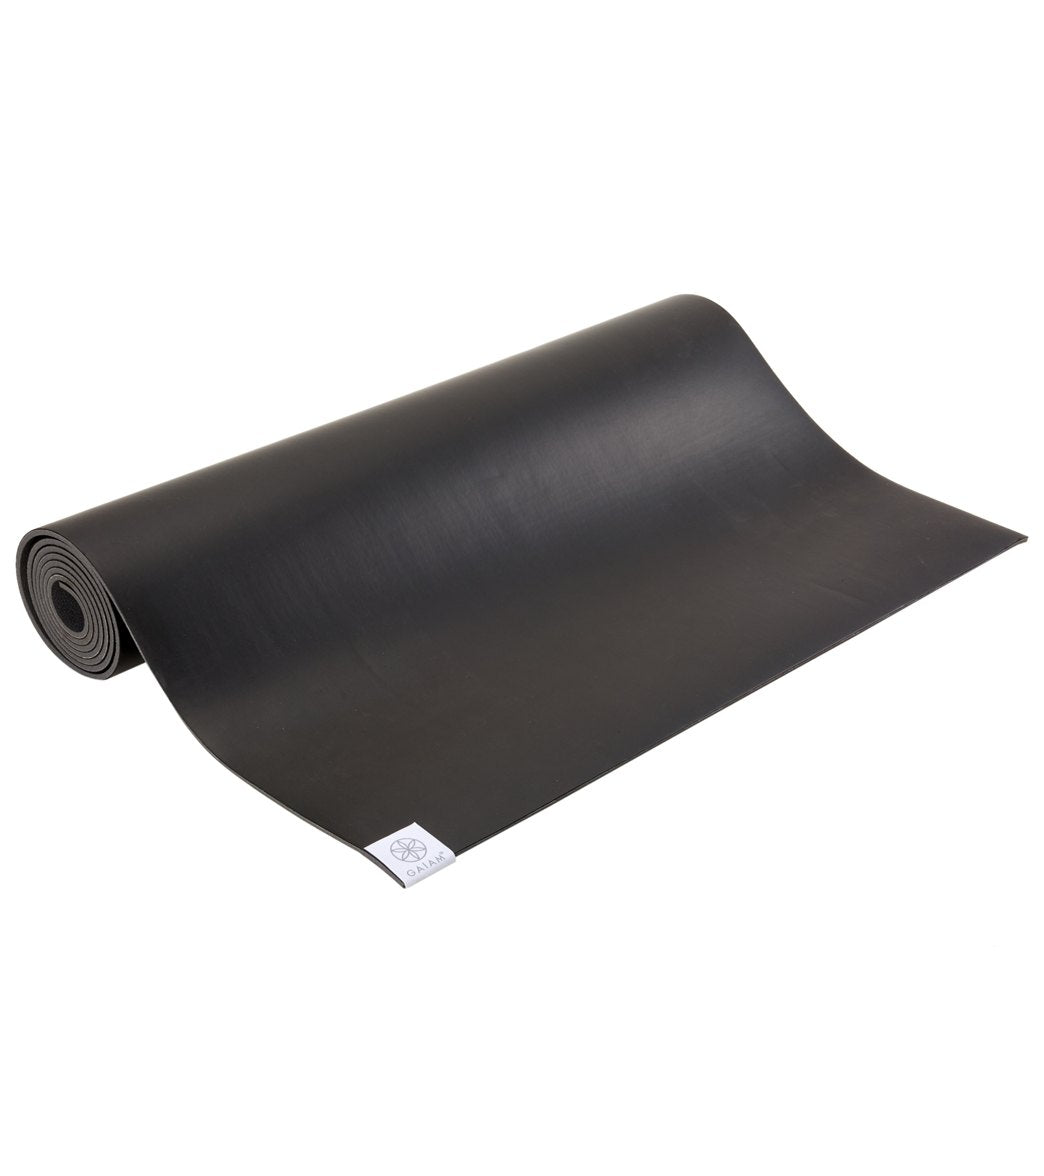 Gaiam Dry Grip Yoga Mat Long & Wide 78 5mm at